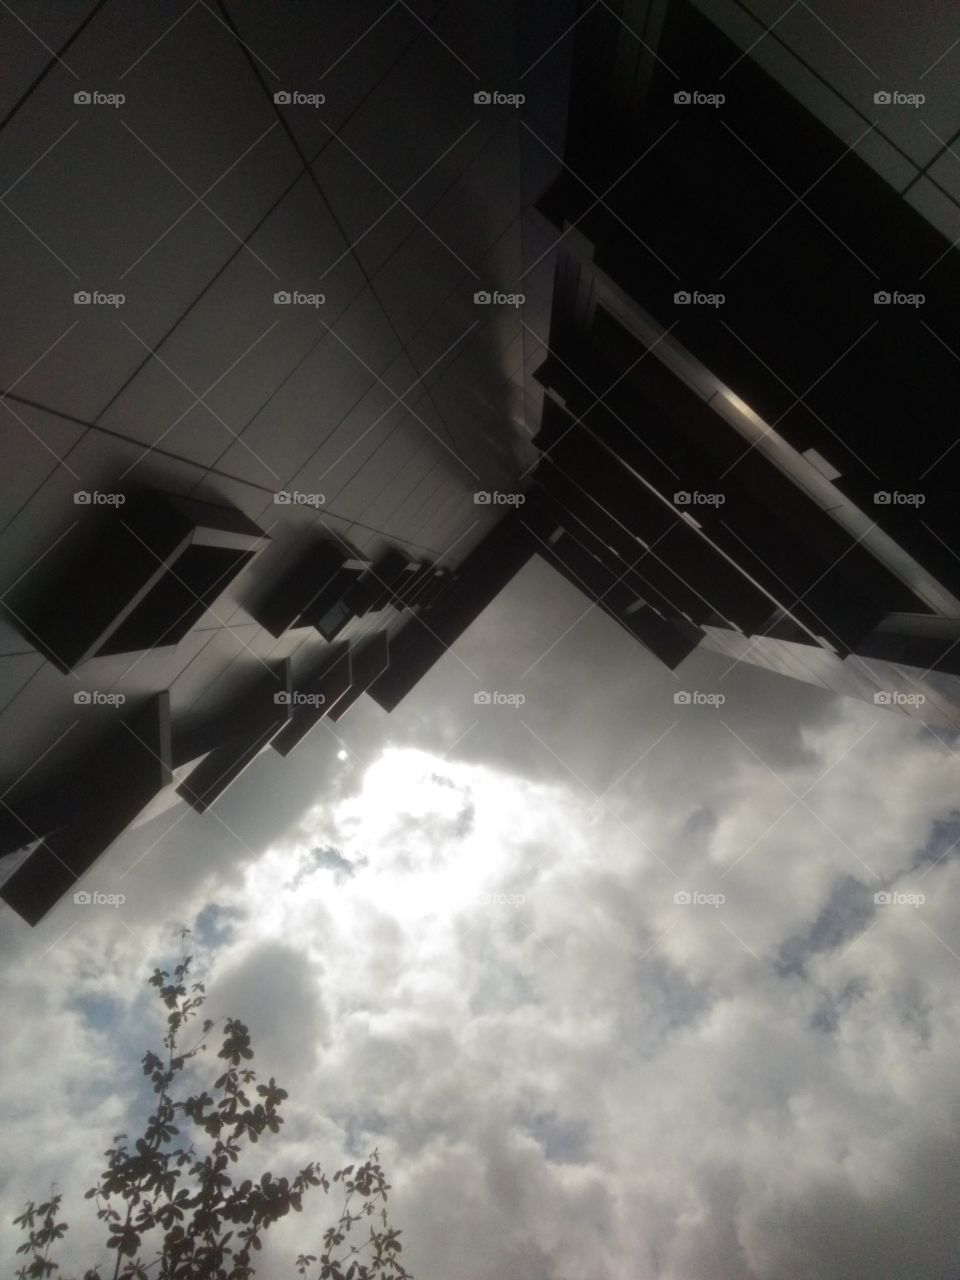 pengambilan foto gedung dengan teknik pengambil atas ke bawah yang menimbulkan efek ritme di bagian jendela